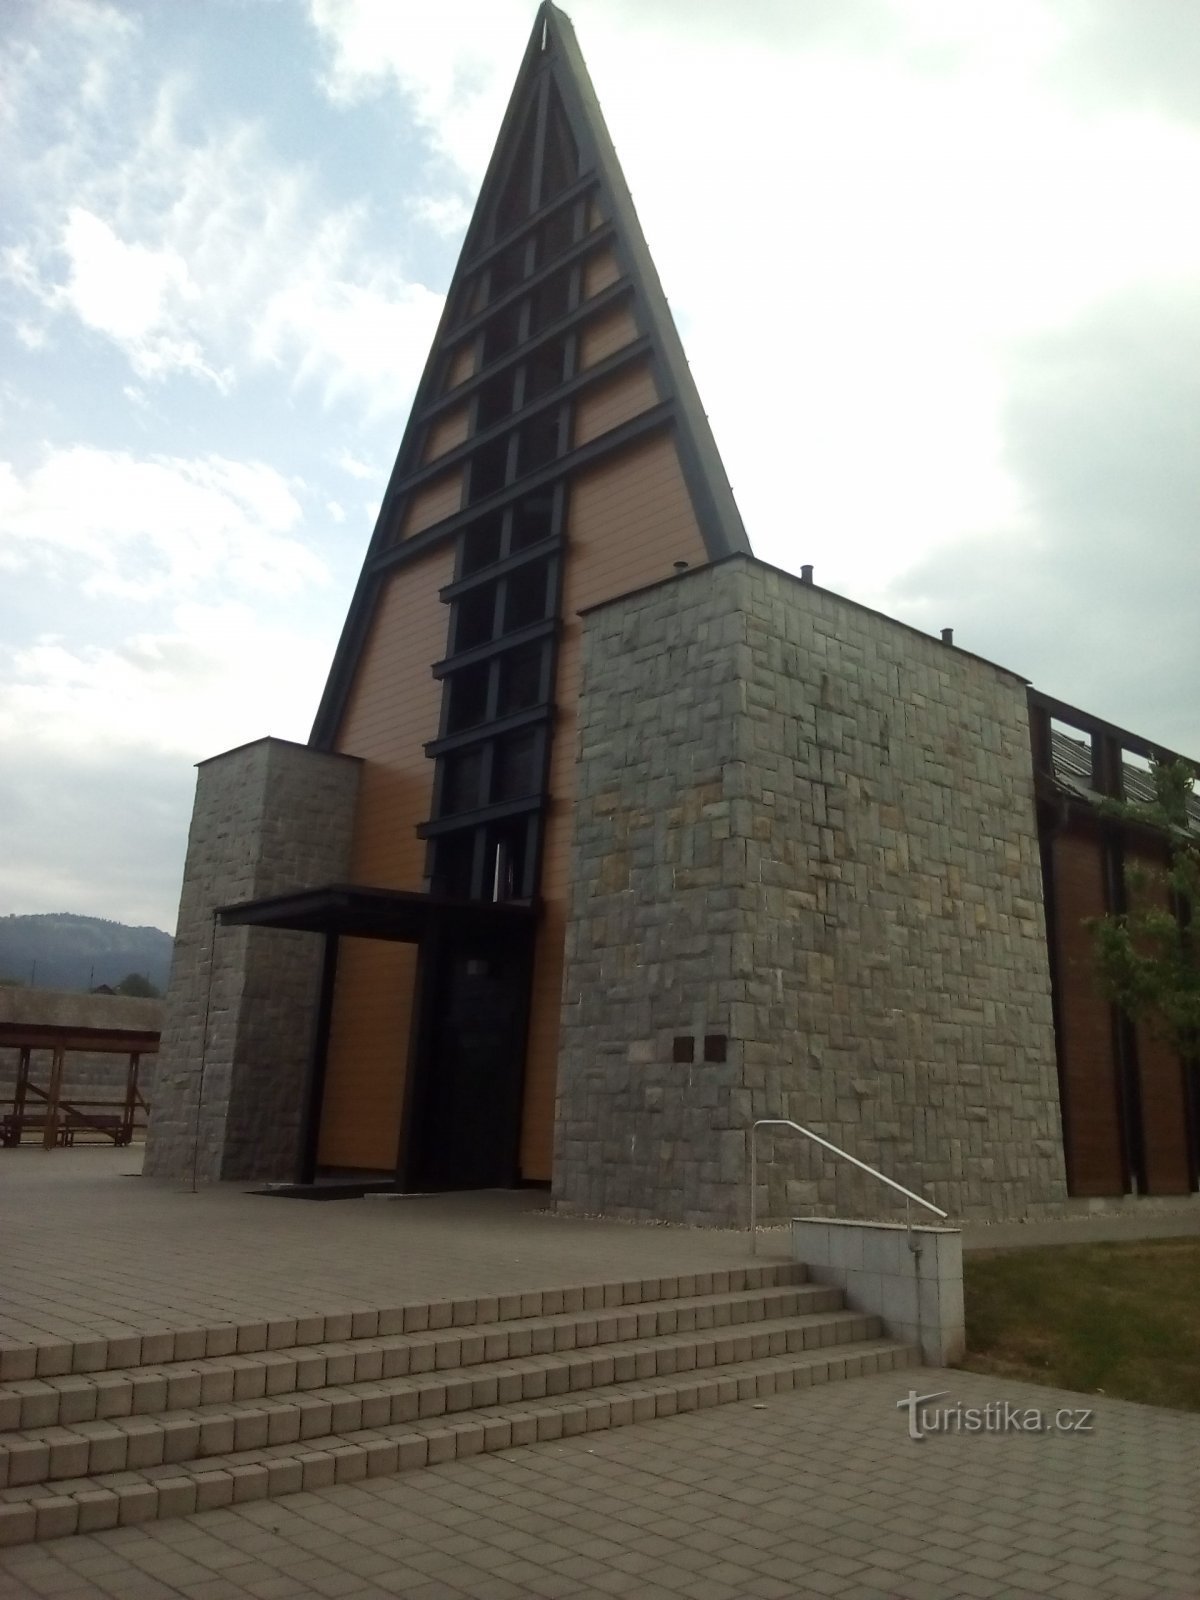 SCEAV-kerk in Písek